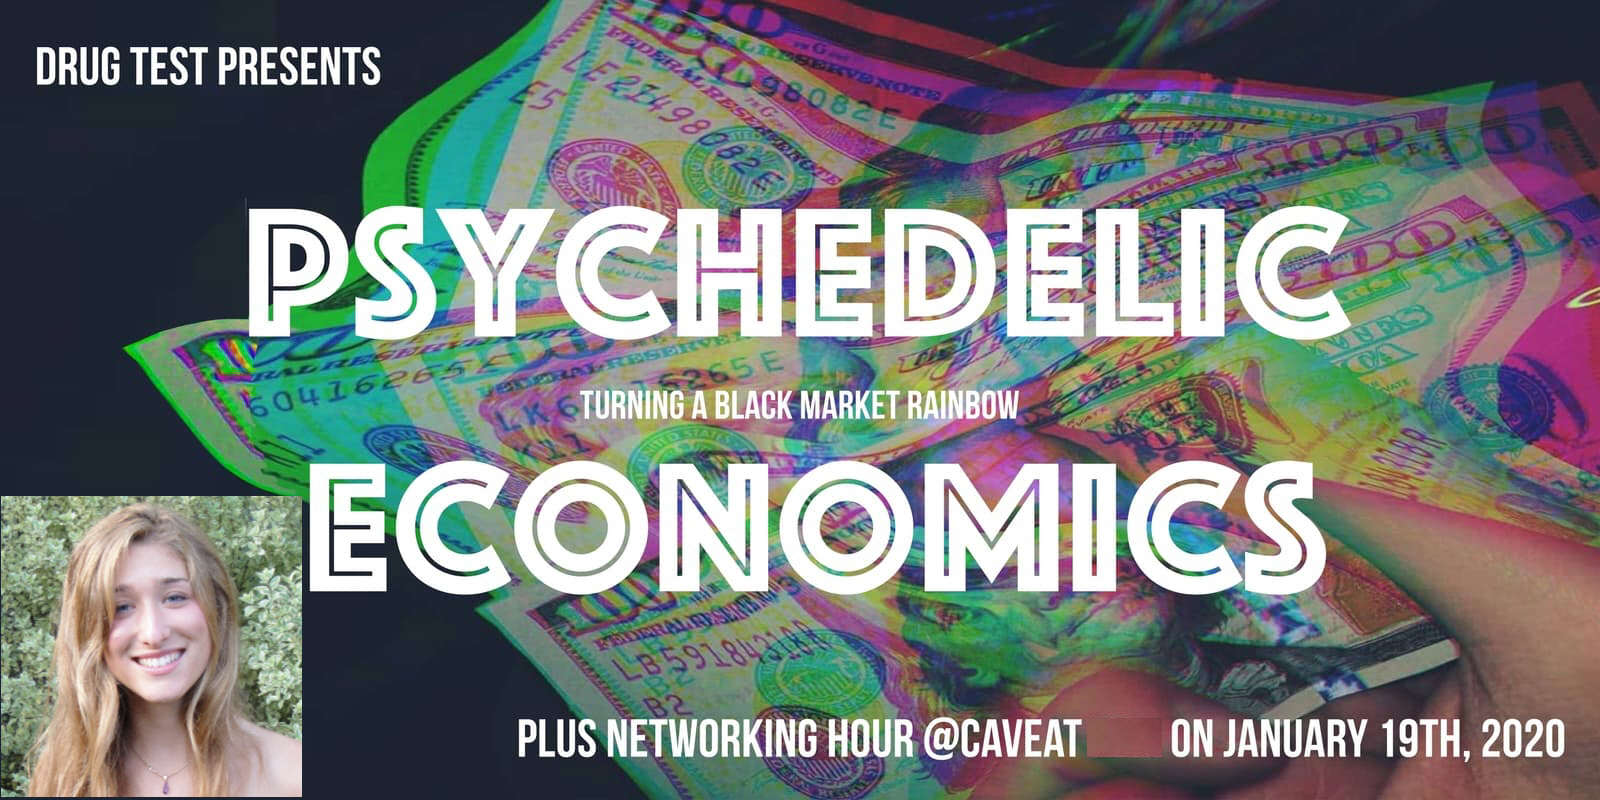 Sarah Rose Siskind's "Drug Test: Psychedelic Economics & Networking Hour"